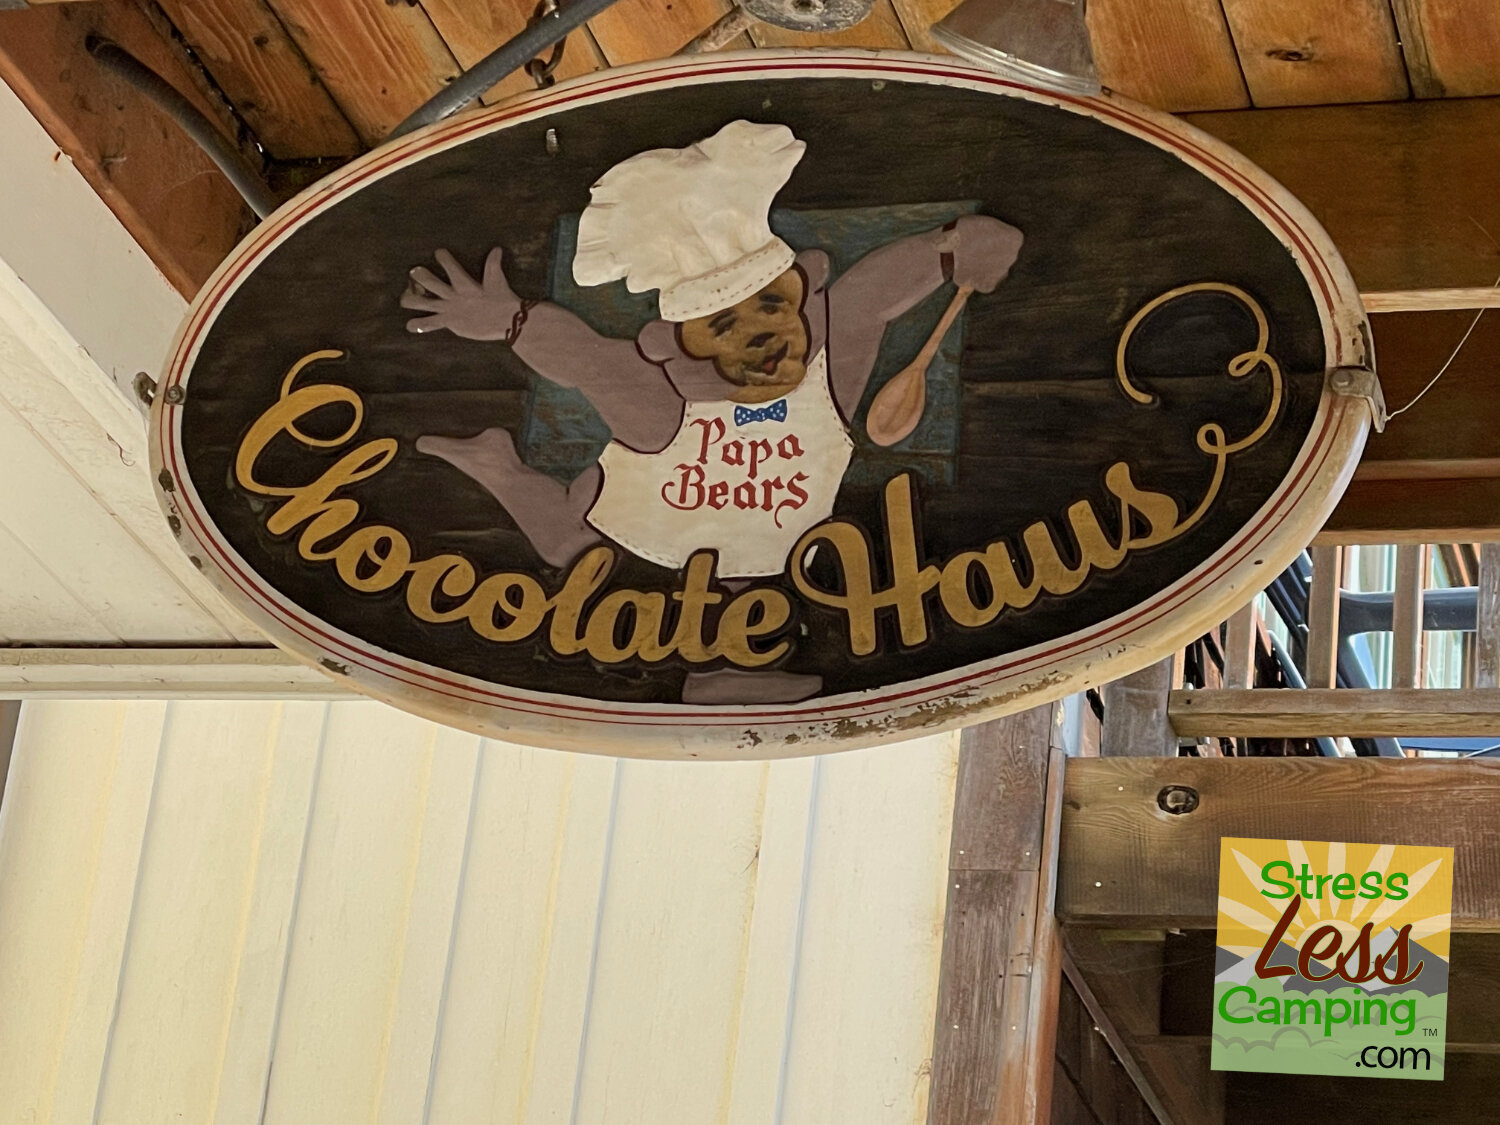 Papa Bears Chocolate Haus